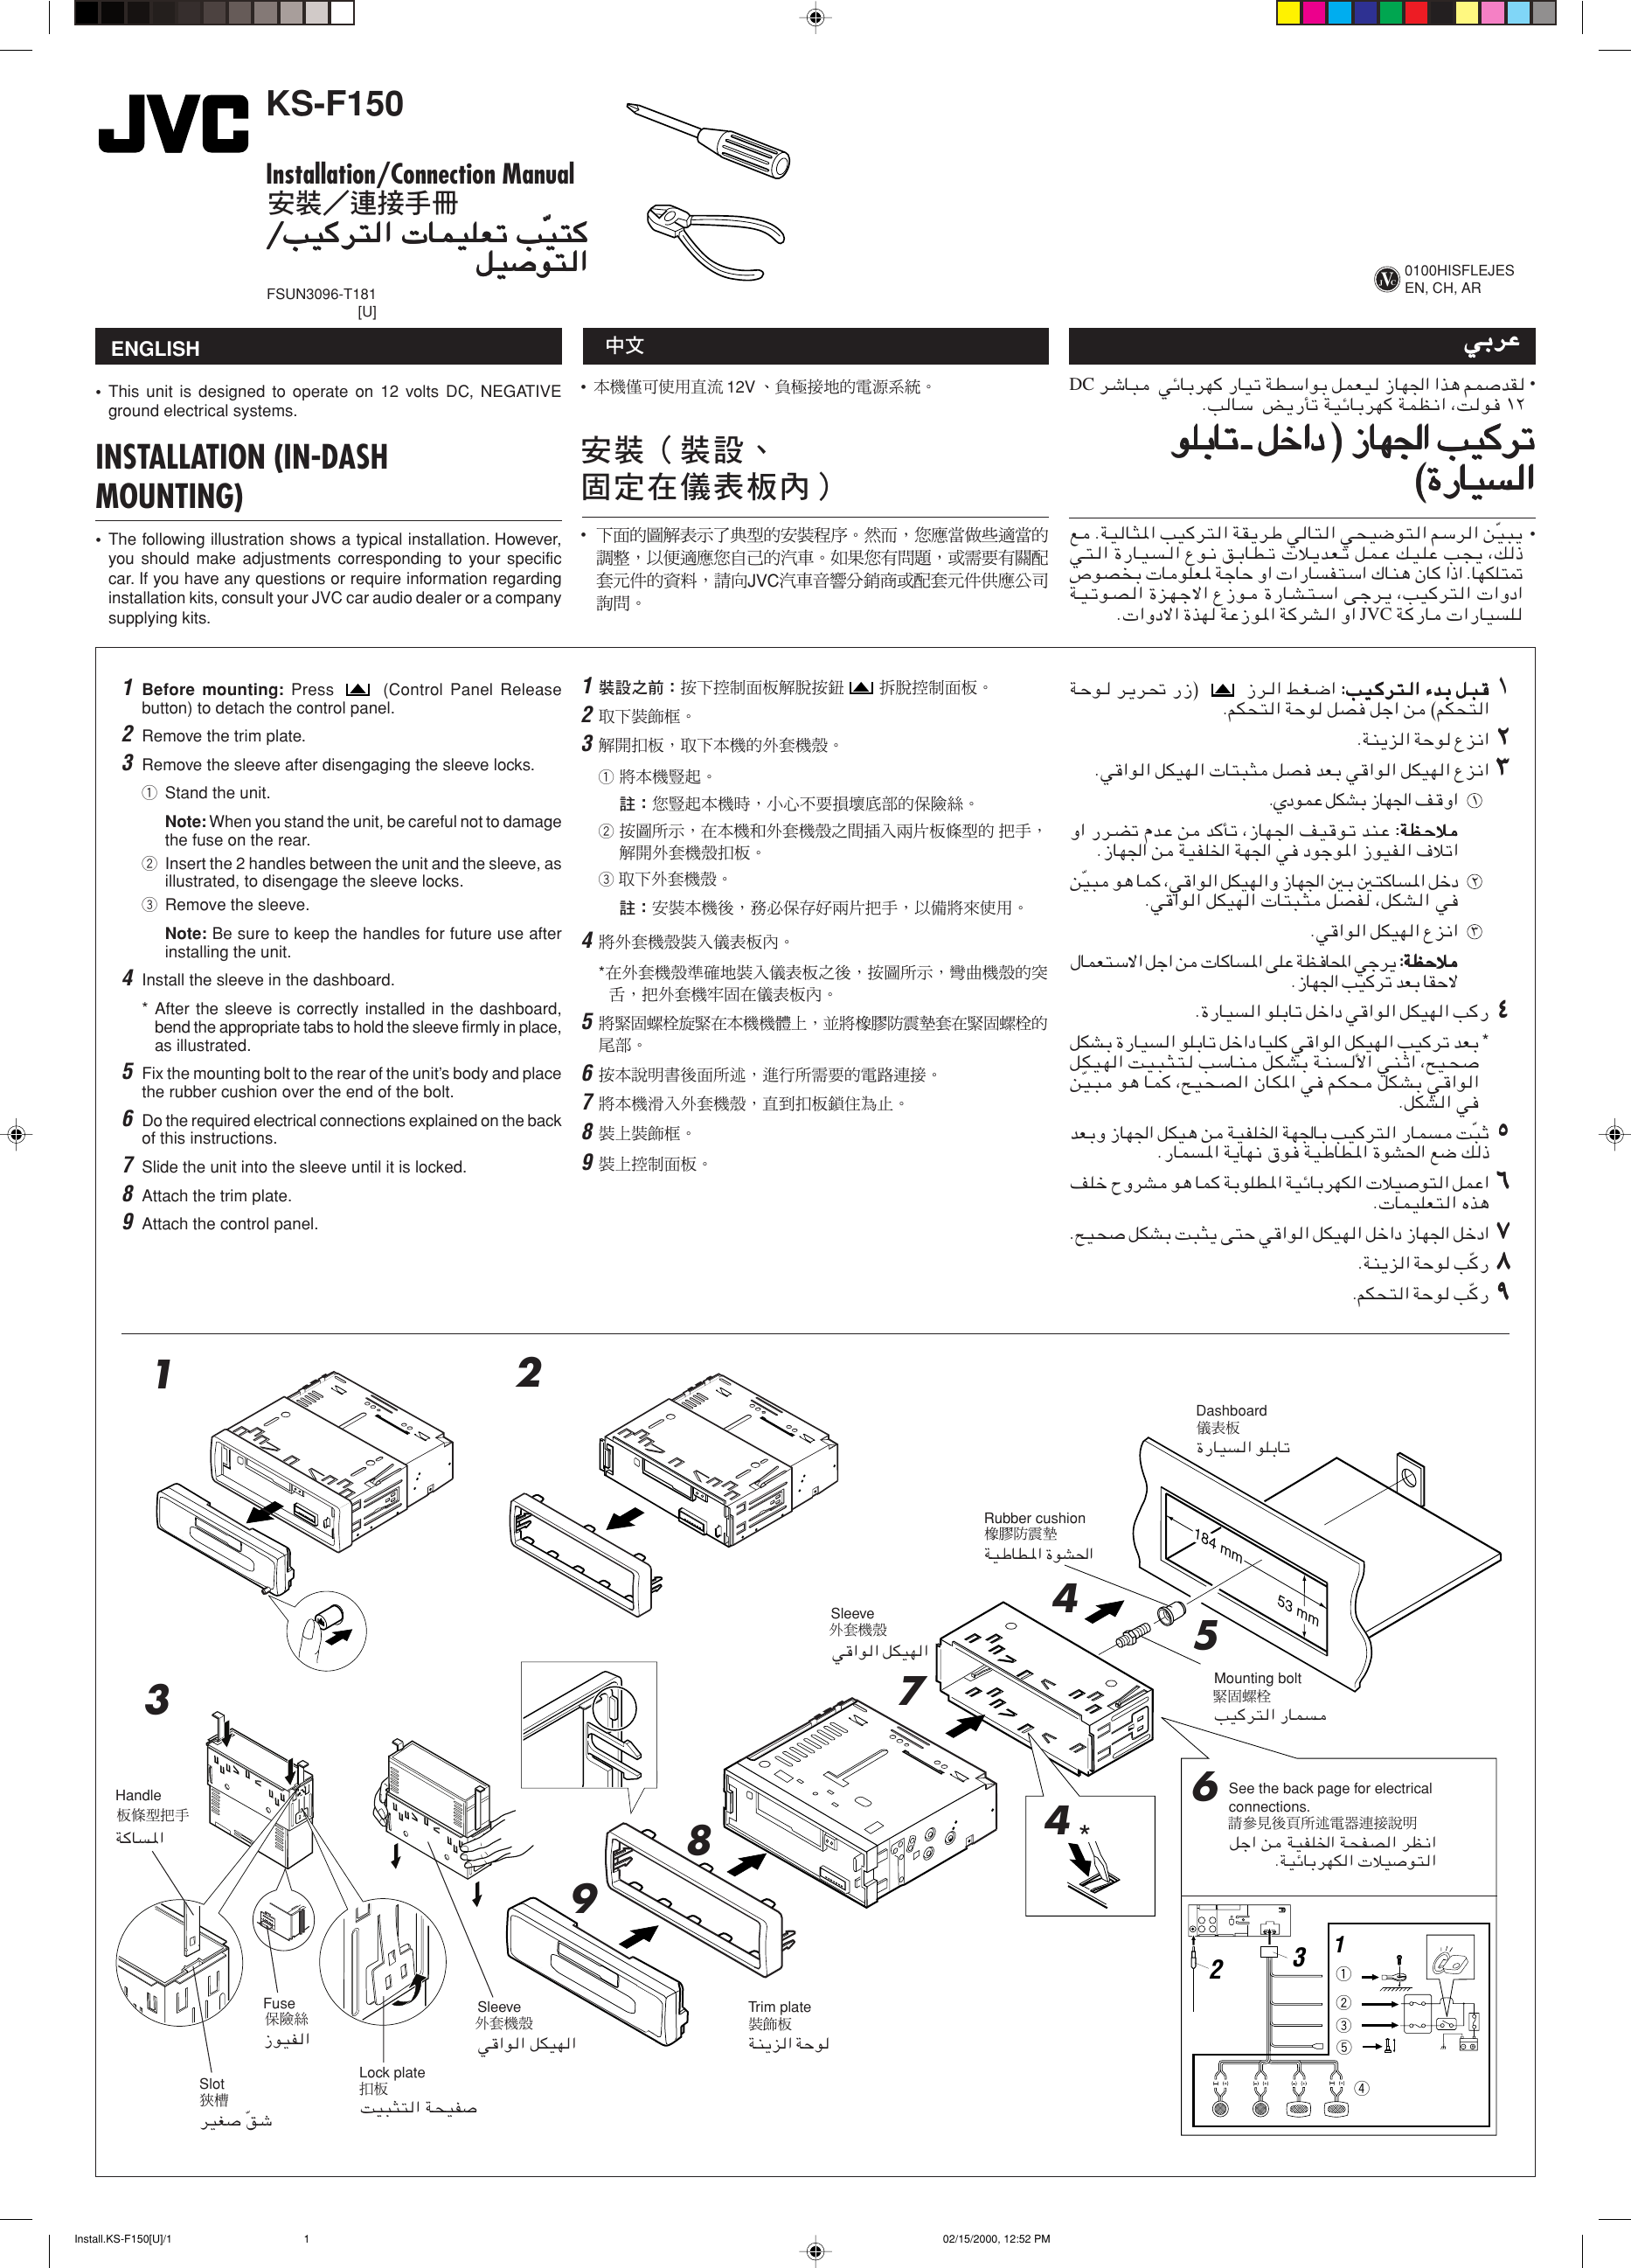 Page 1 of 4 - JVC KS-F150 User Manual FSUN3096-T181